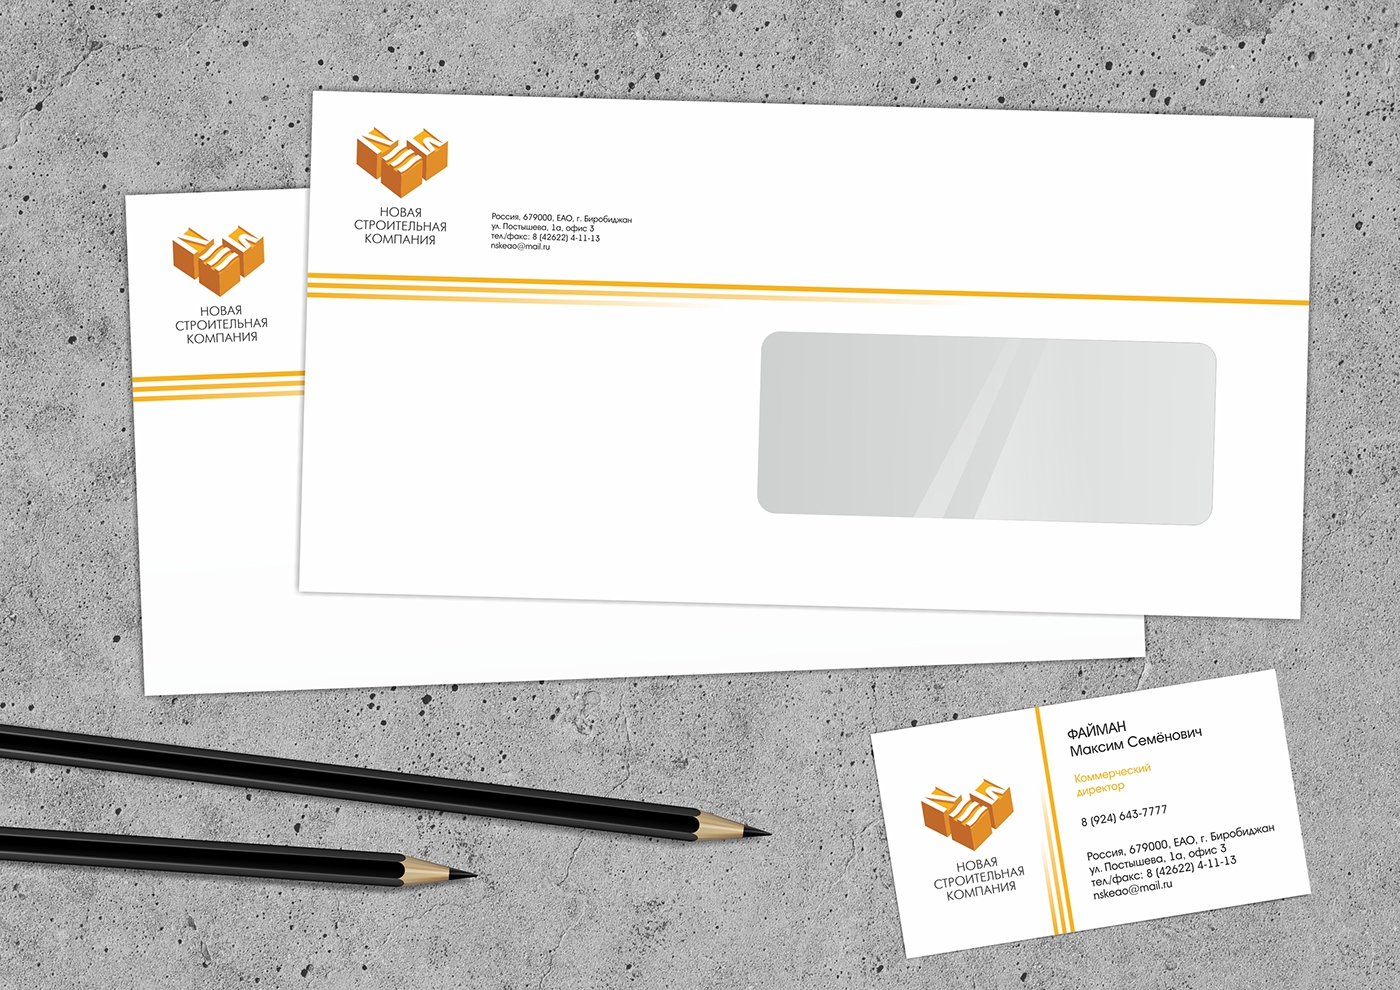 Corporate Identity Identity System construction company new visual identity logo orange Сompany